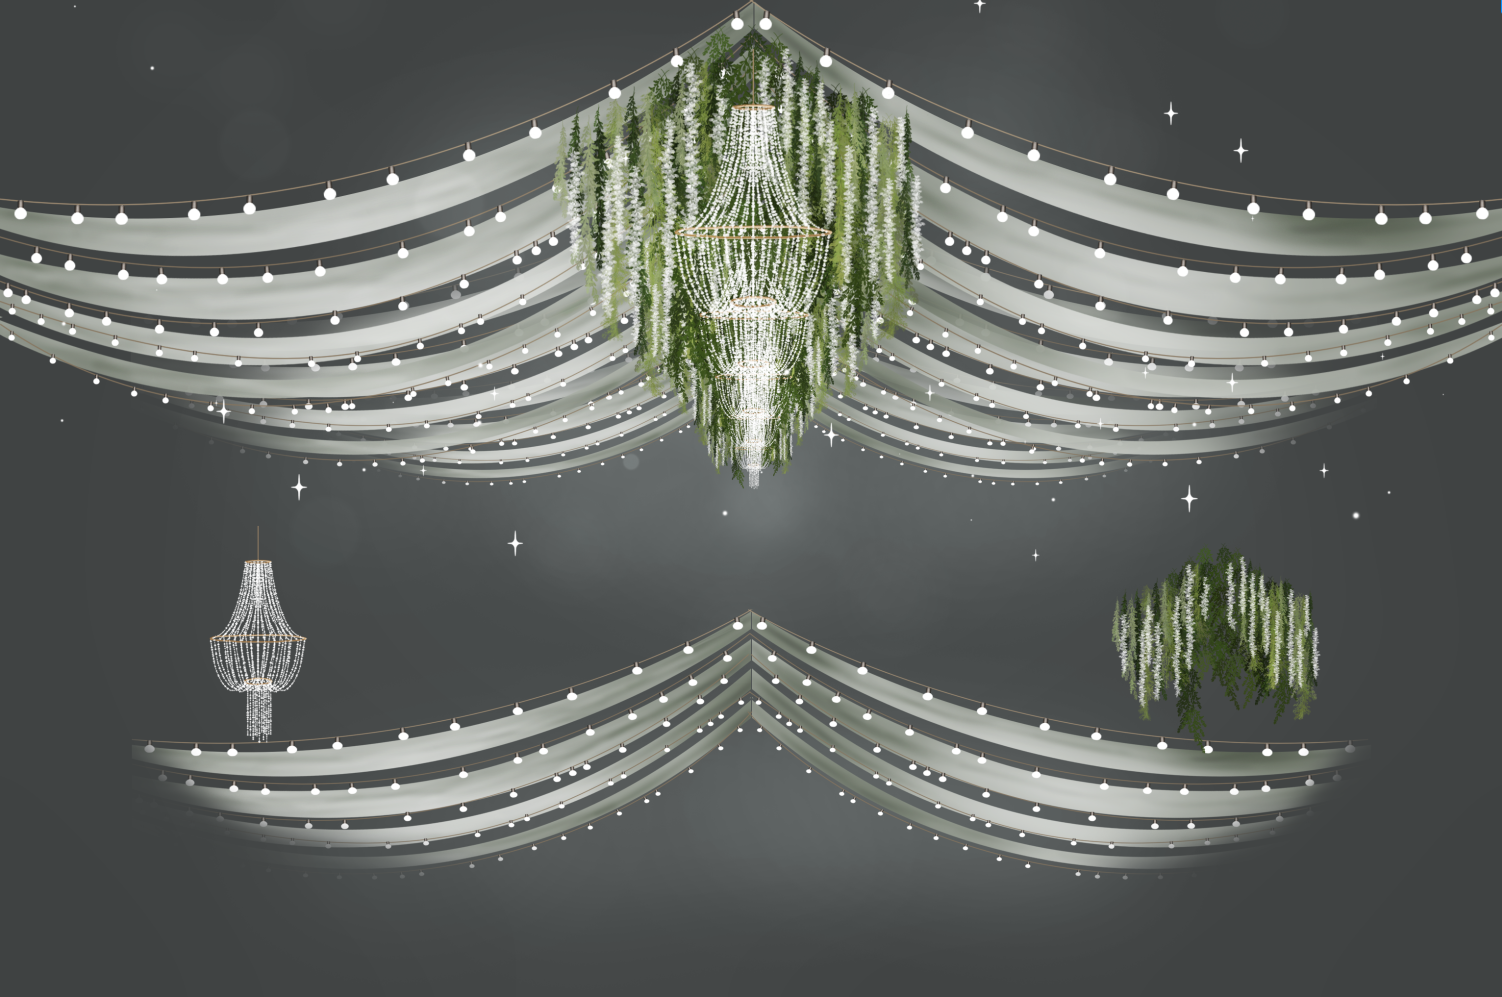 森系梦幻素材道具婚礼手绘素材吊顶设计舞台路引秋千桌椅PS效果图